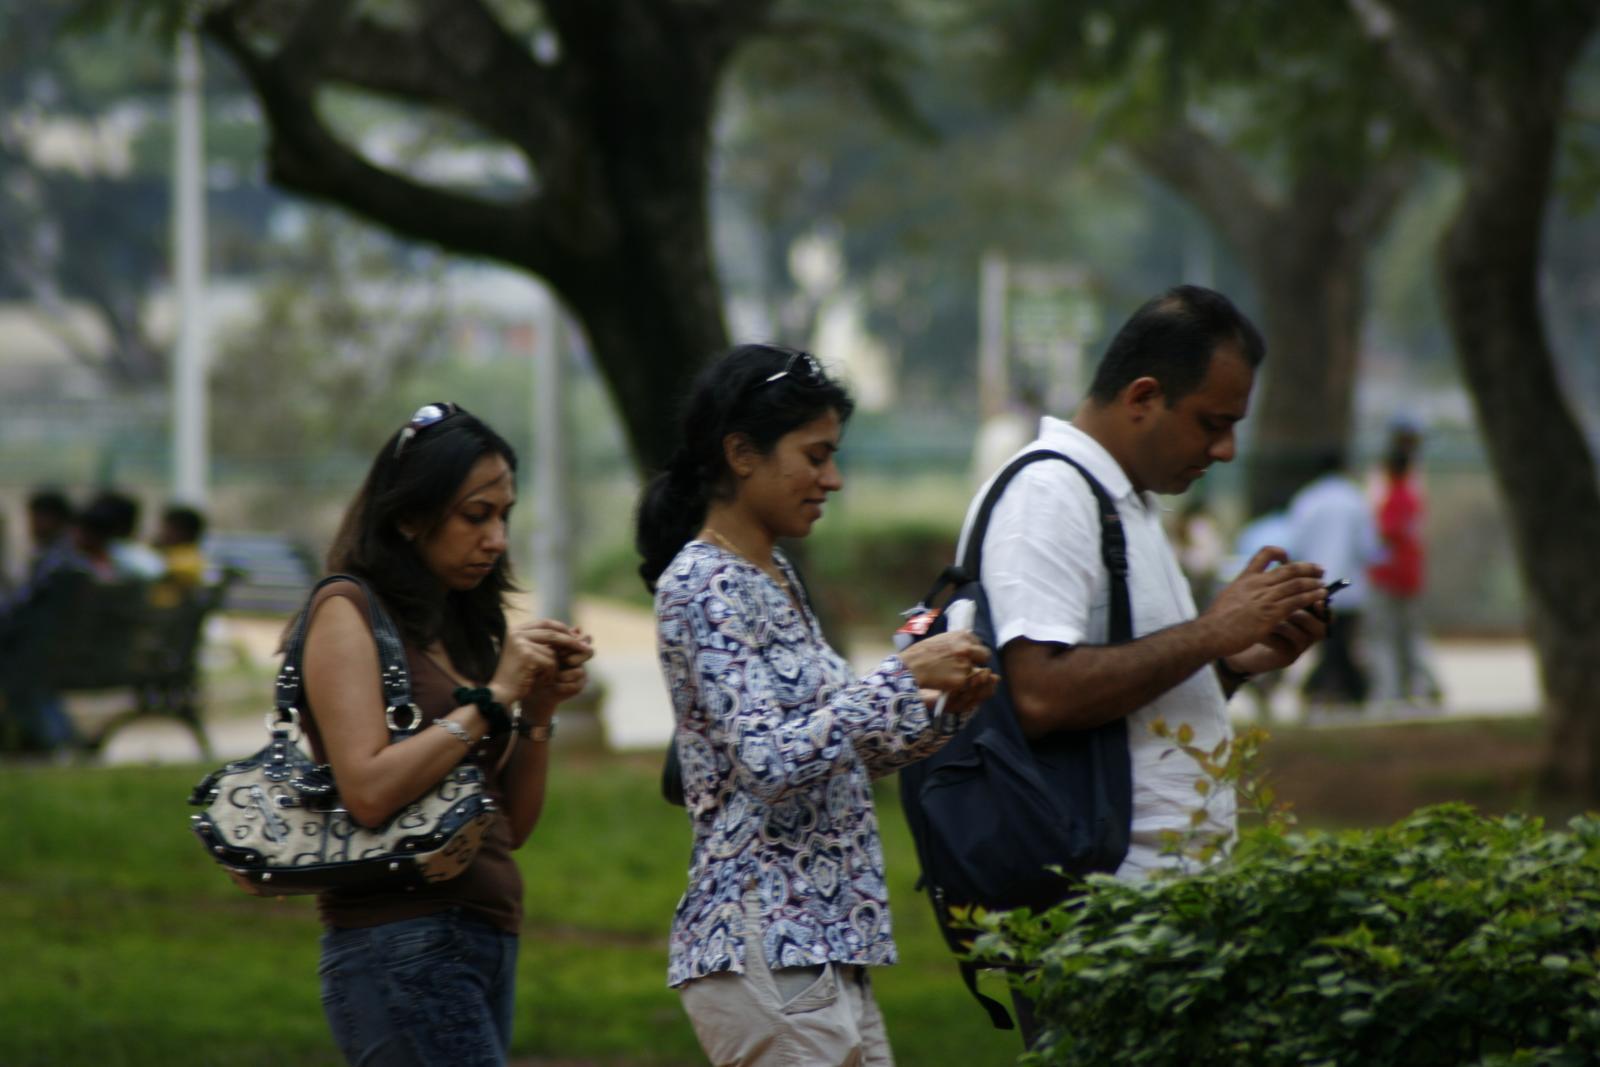 India raised import tax on smartphones